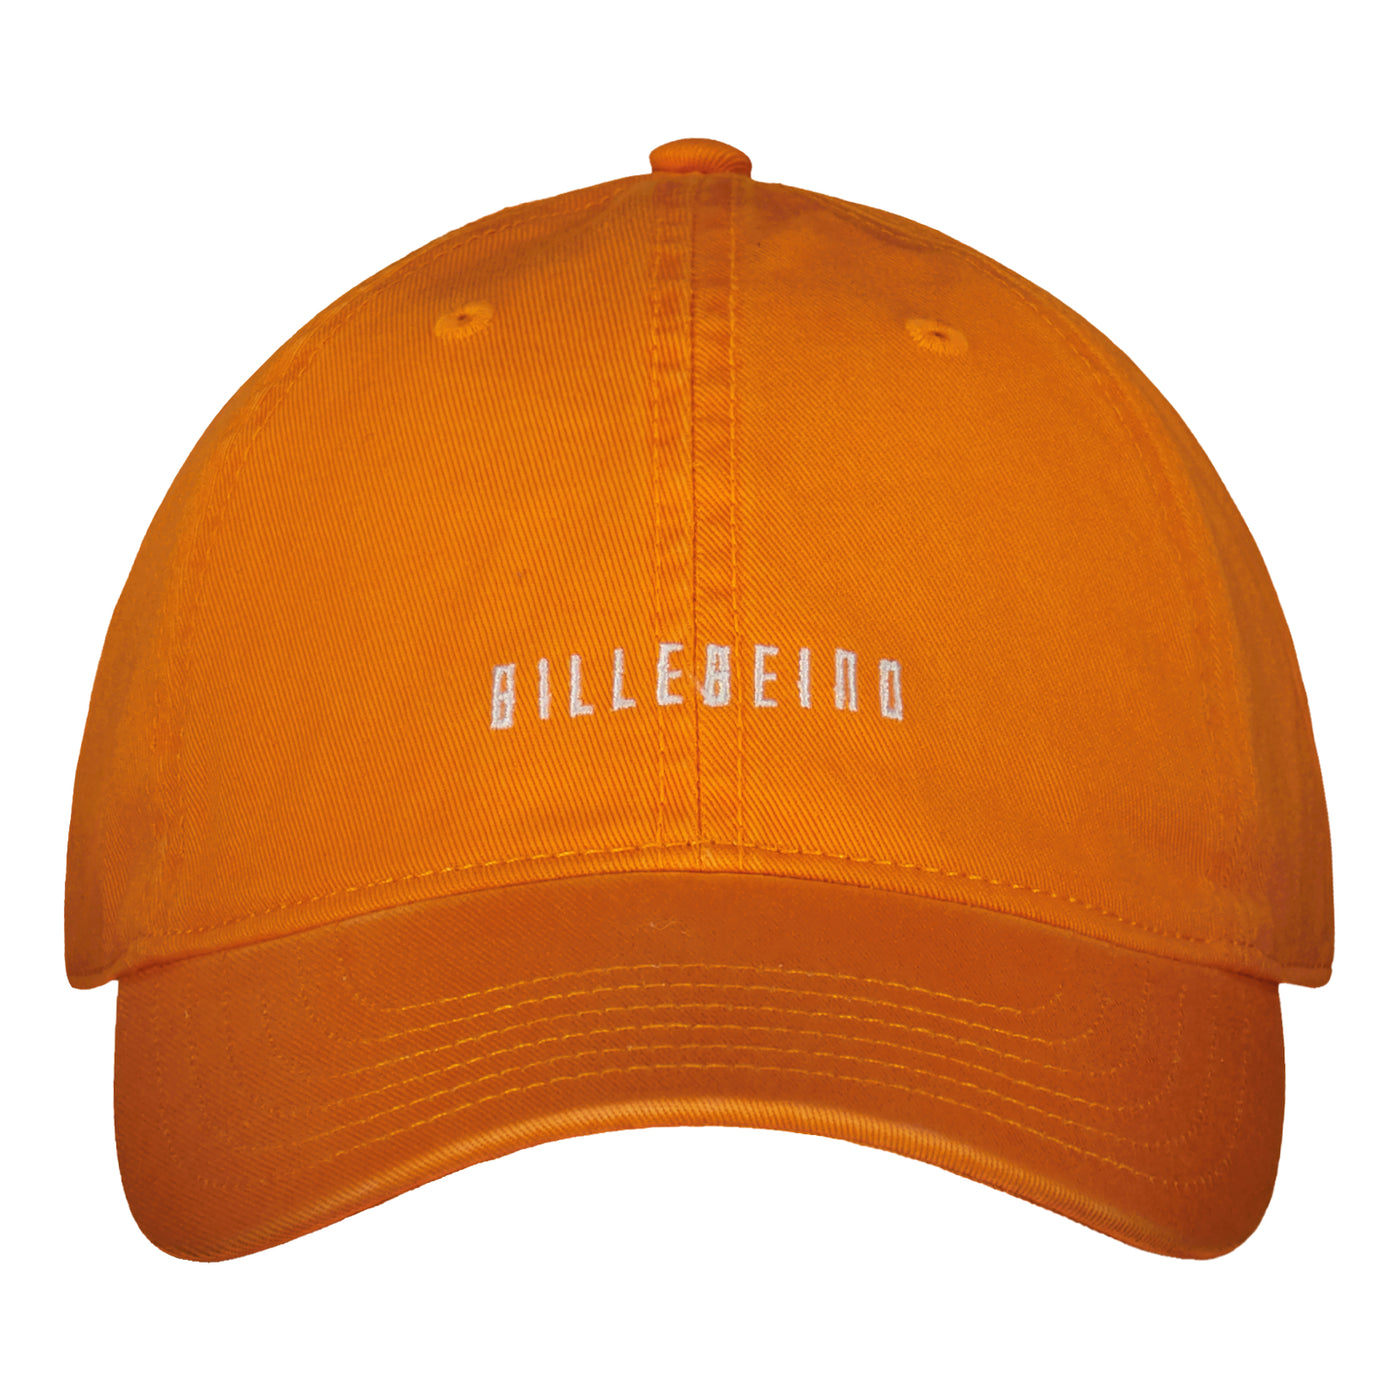 BILLEBEINO DAD CAP Billebeino